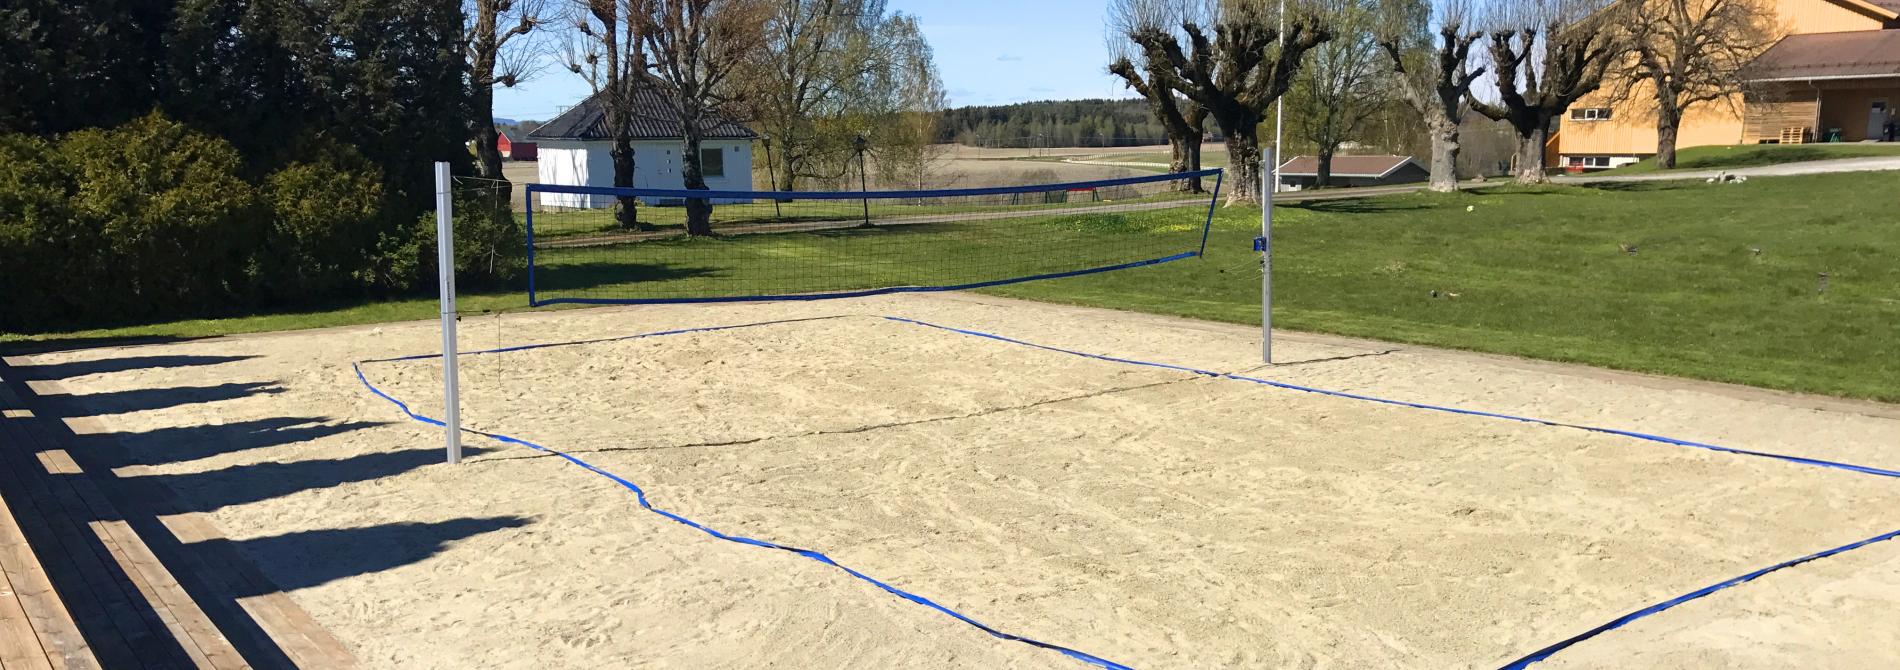 Sandvolleyballbanen er klar for sesong